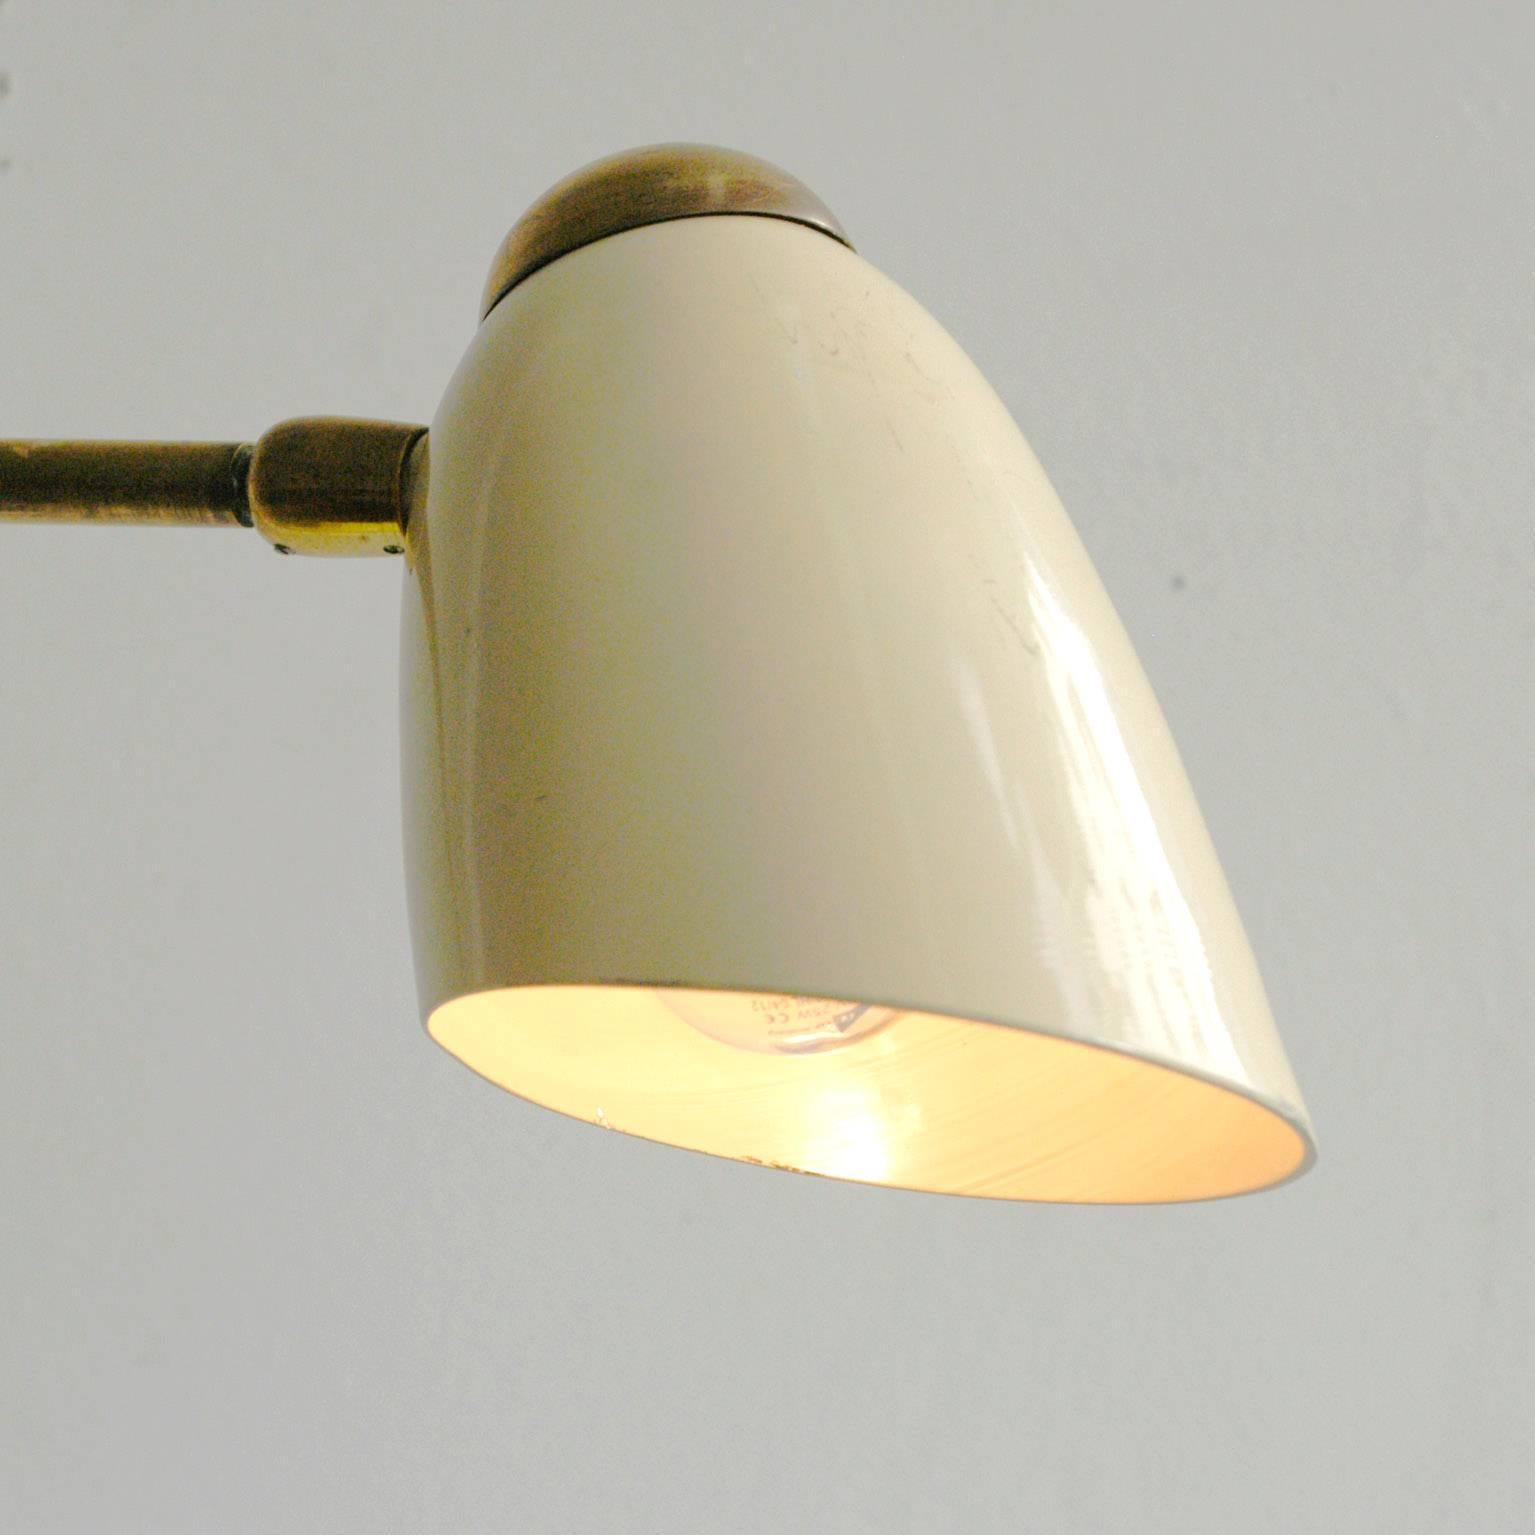 Mid-20th Century Italian Midcentury Brass Wall Light by Arteluce